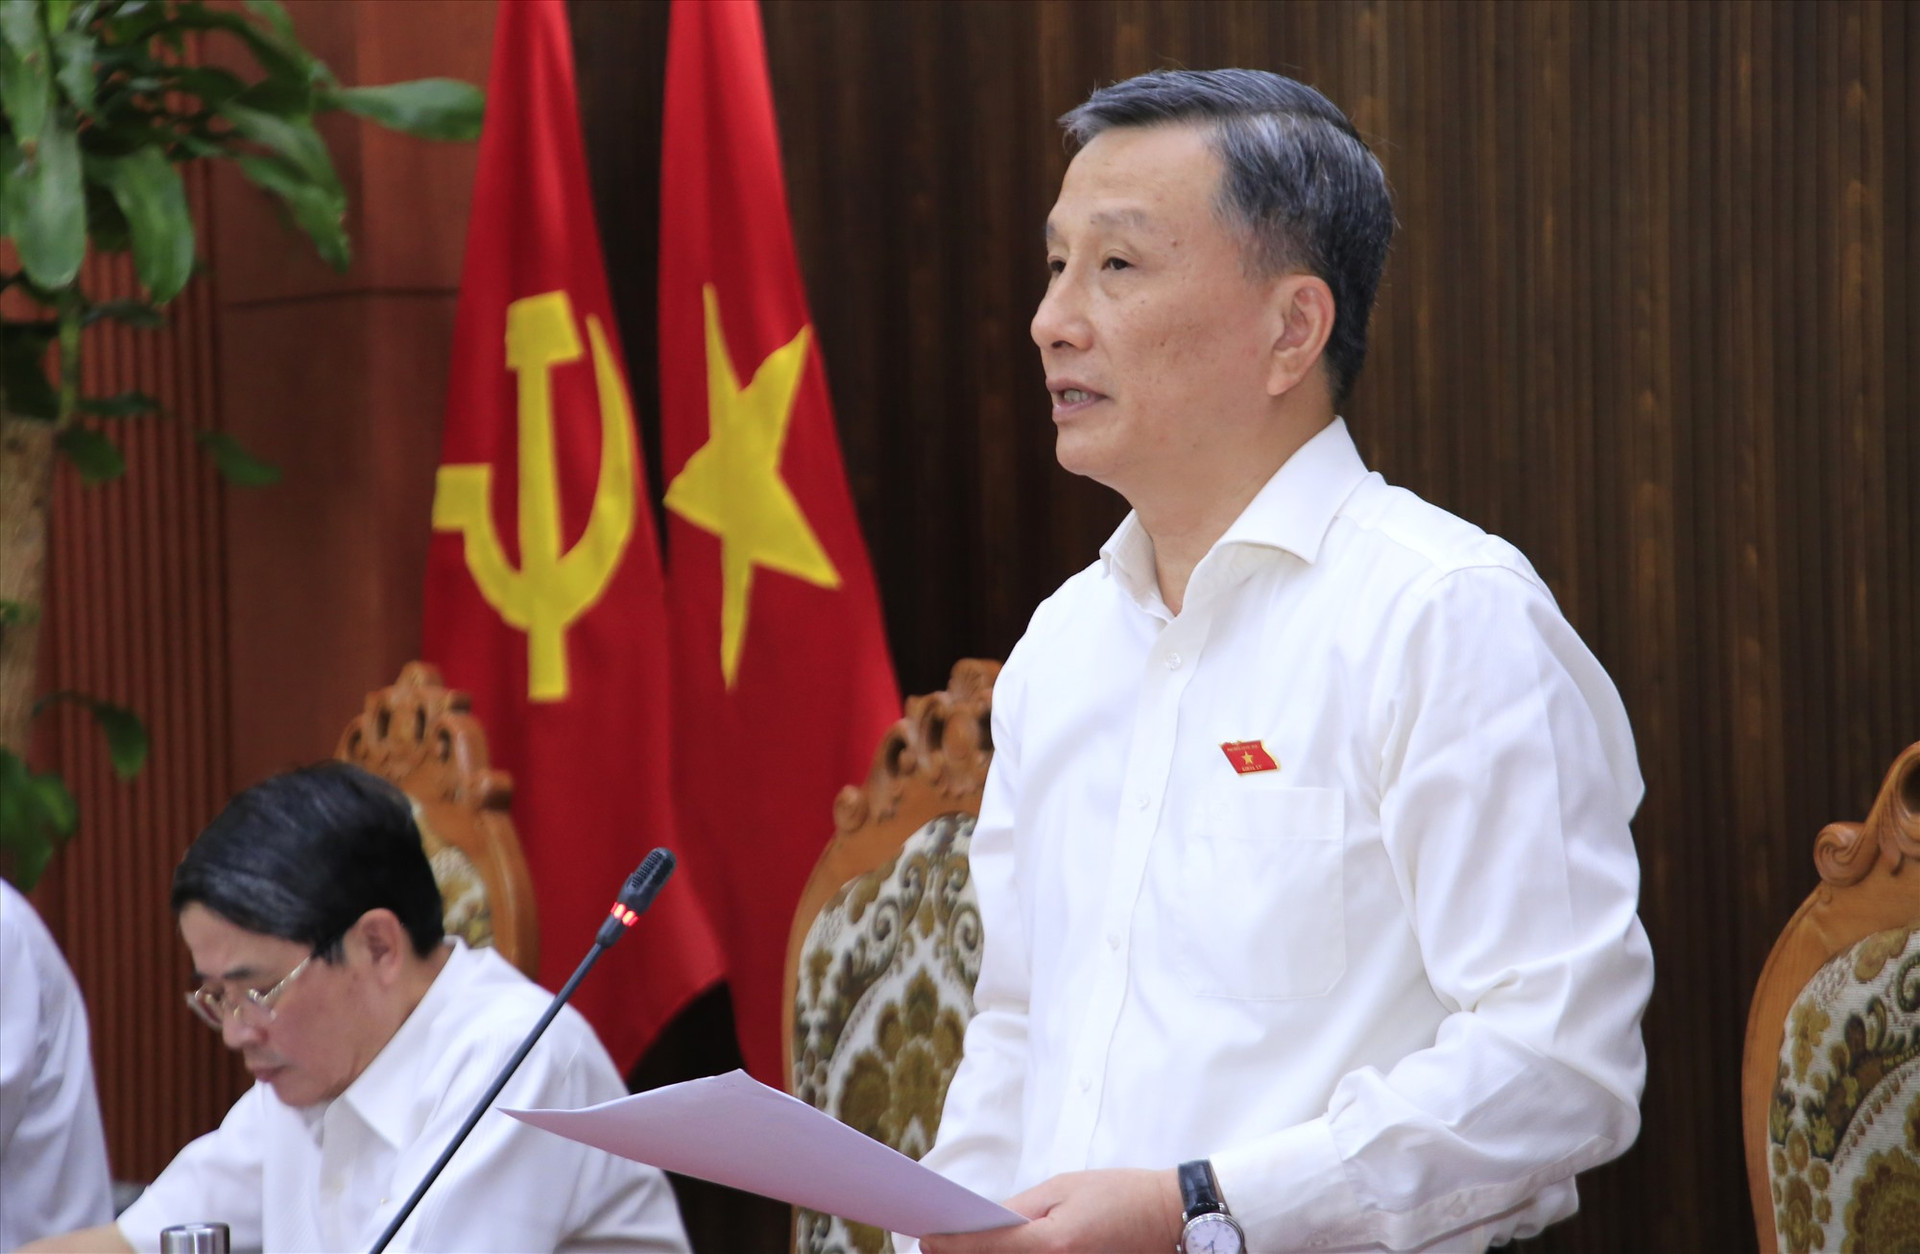 Đồng chí Lê Quang Huy - Chủ nhiệm Ủy ban Khoa học, Công nghệ và Môi trường của Quốc hội phát biểu tại buổi làm việc. Ảnh: T.C